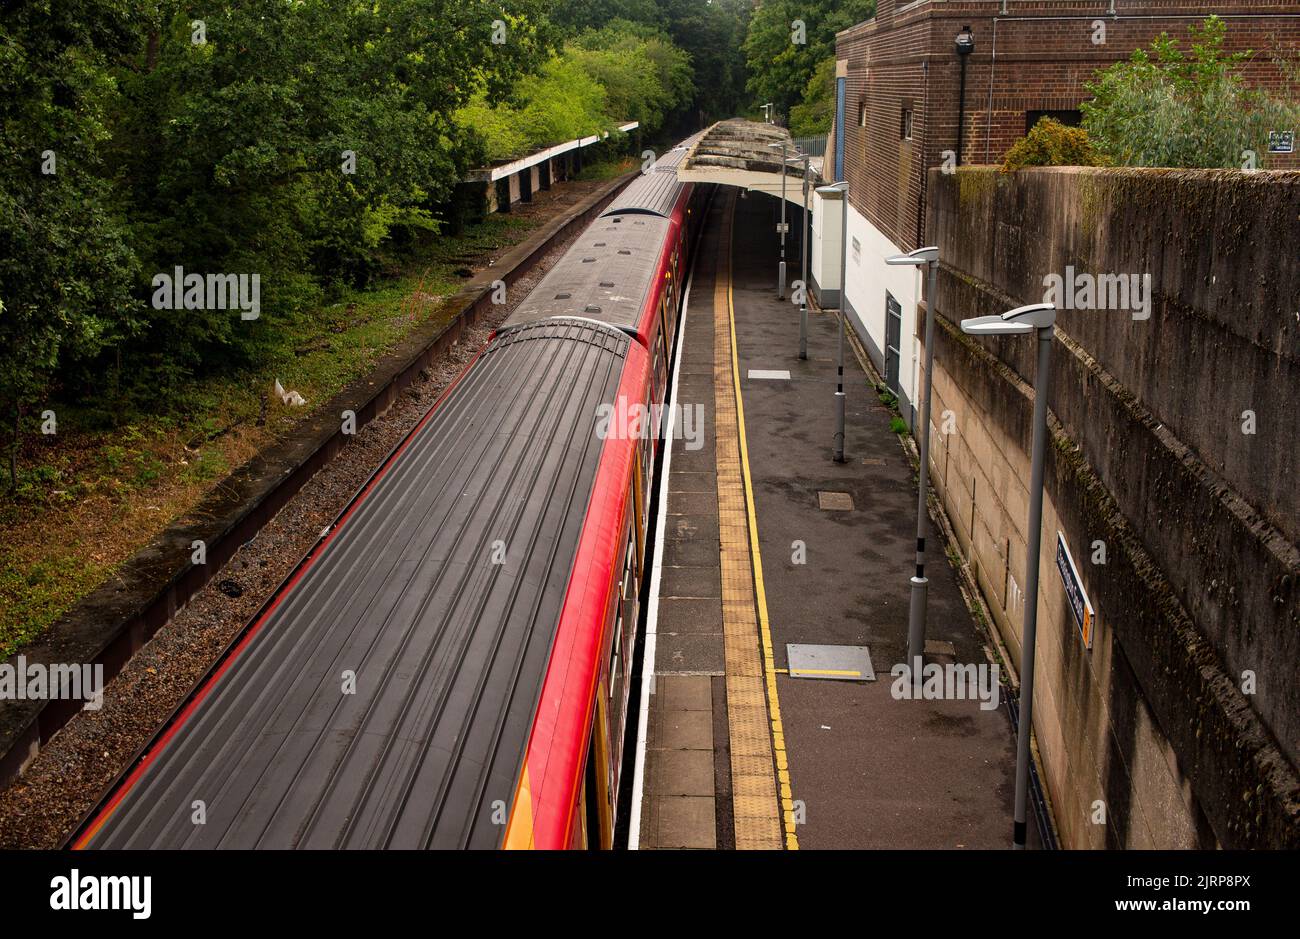 Chessington South Railway Station, Südwesten London, Großbritannien; die Gleise von der Brücke aus gesehen Stockfoto